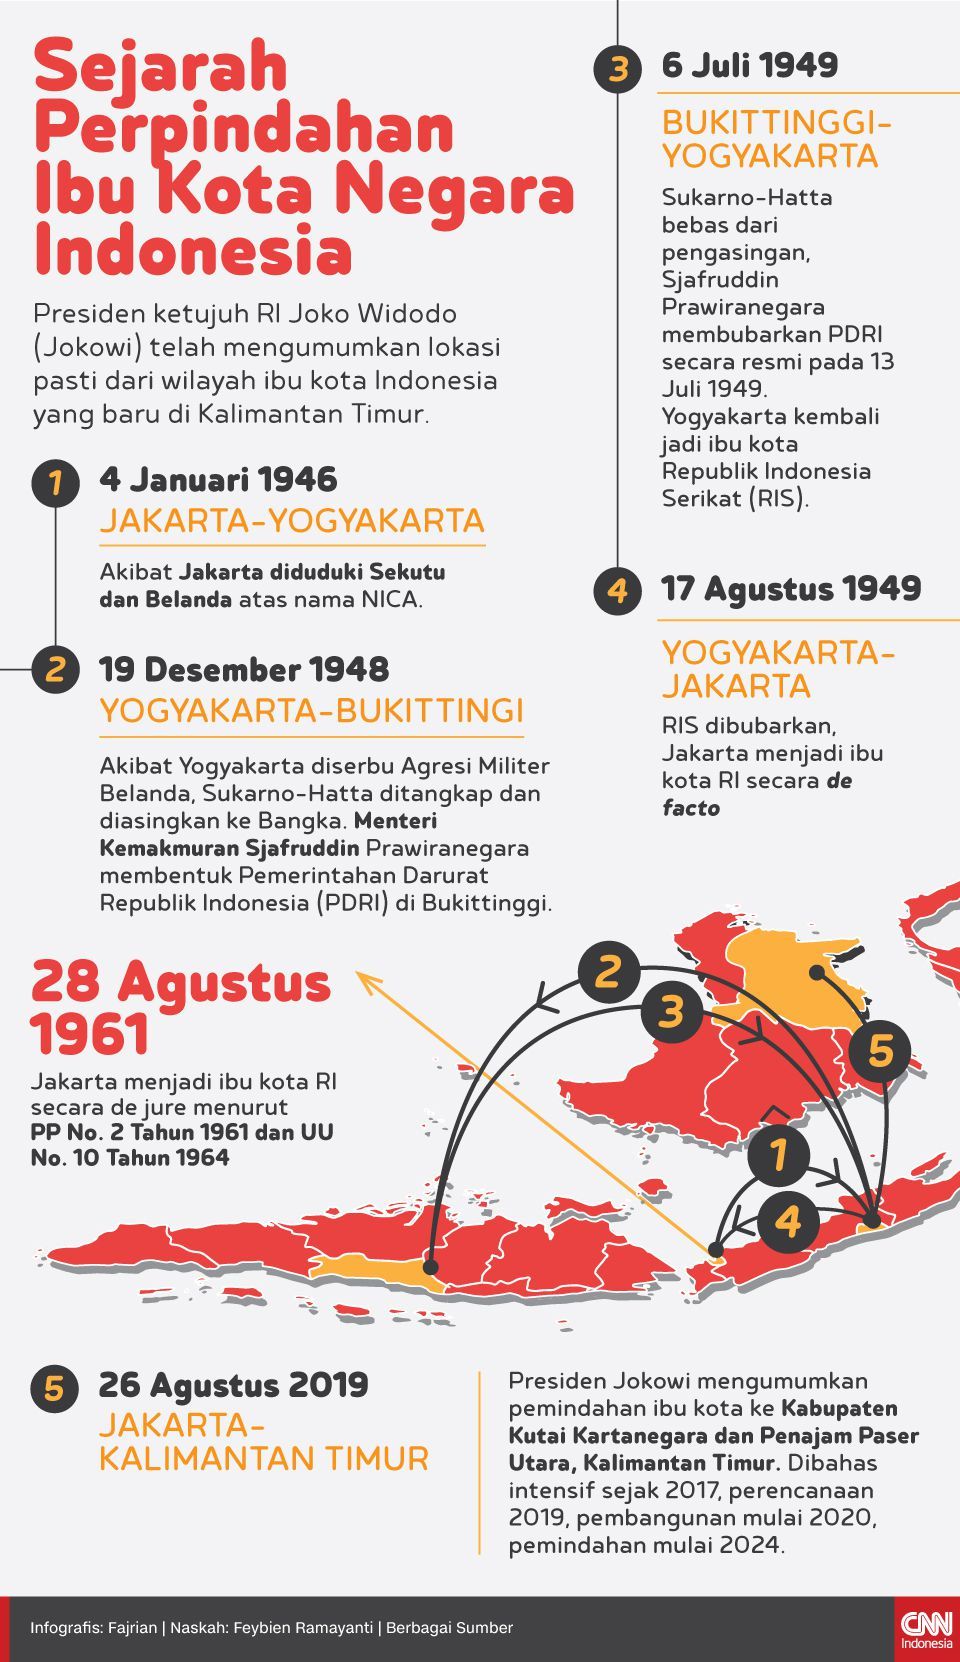 Infografis Sejarah Perpindahan Ibu Kota Negara Indonesia